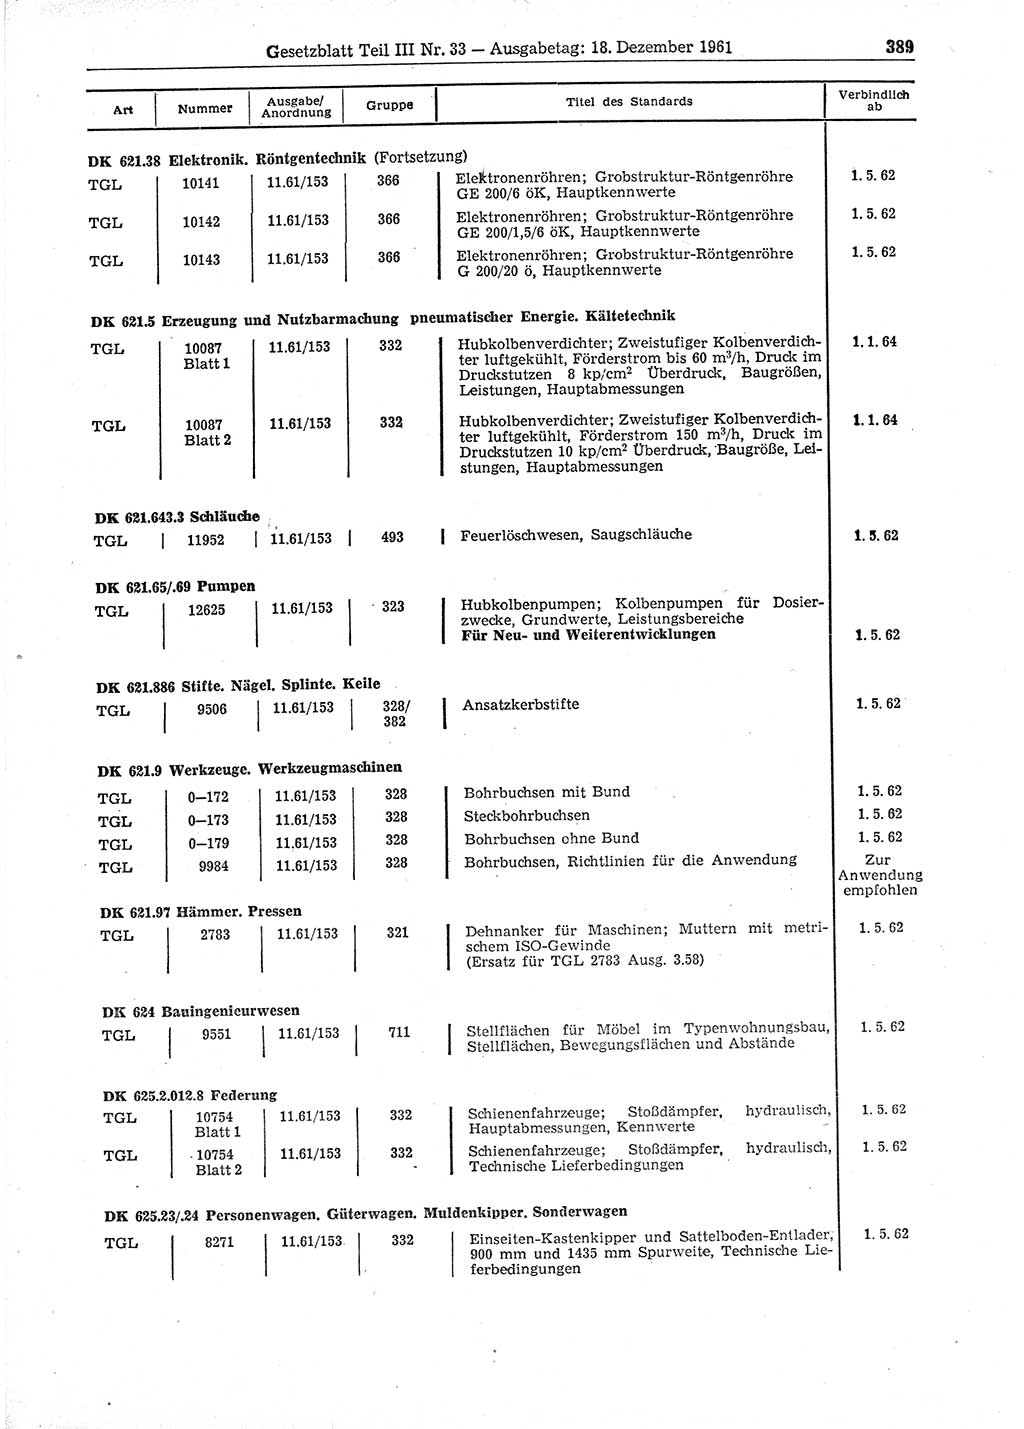 Gesetzblatt (GBl.) der Deutschen Demokratischen Republik (DDR) Teil ⅠⅠⅠ 1961, Seite 389 (GBl. DDR ⅠⅠⅠ 1961, S. 389)